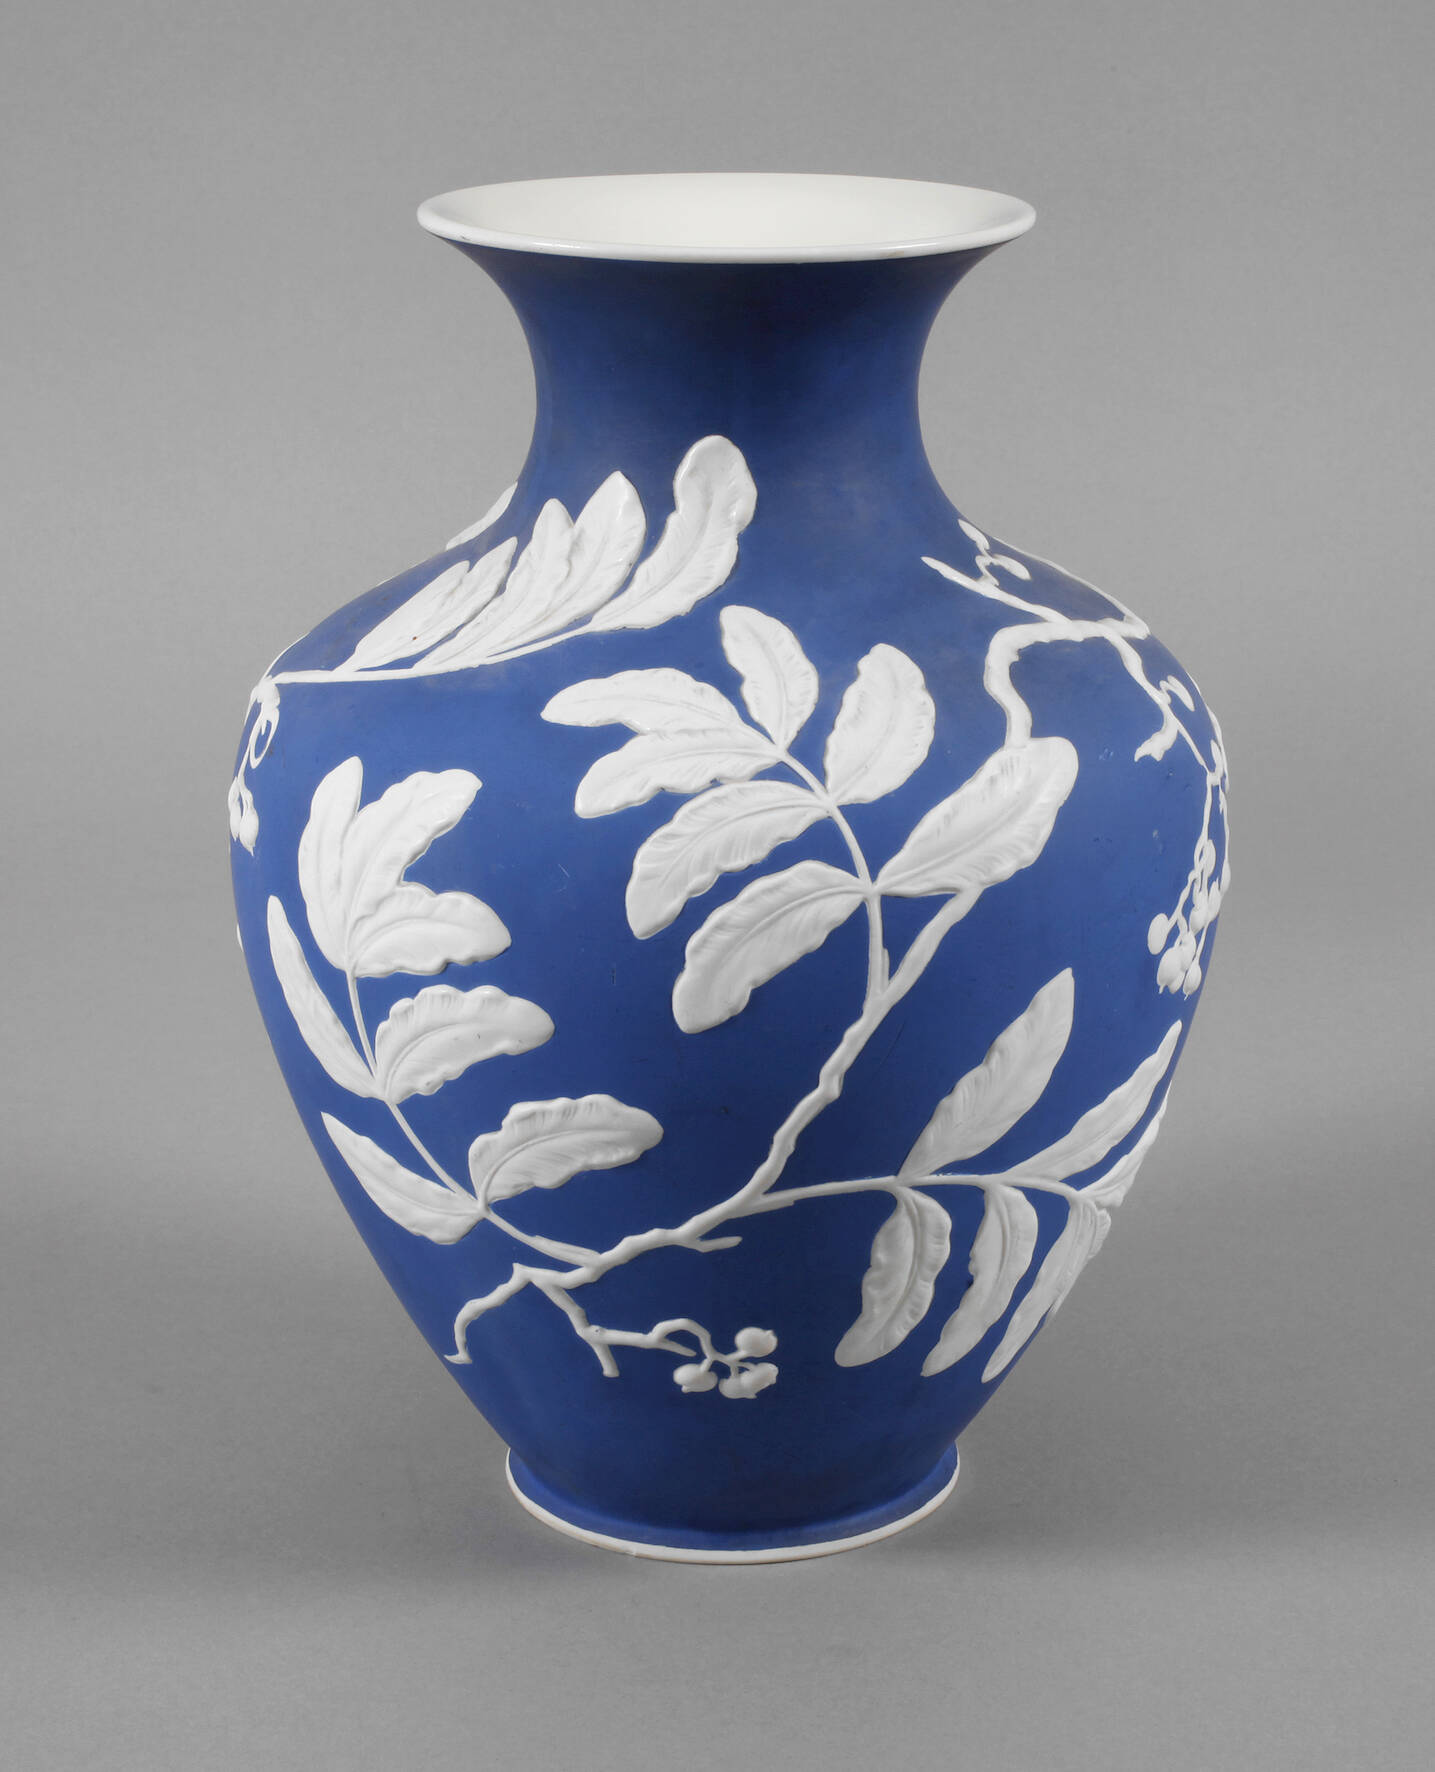 Rosenthal Vase mit Reliefdekor